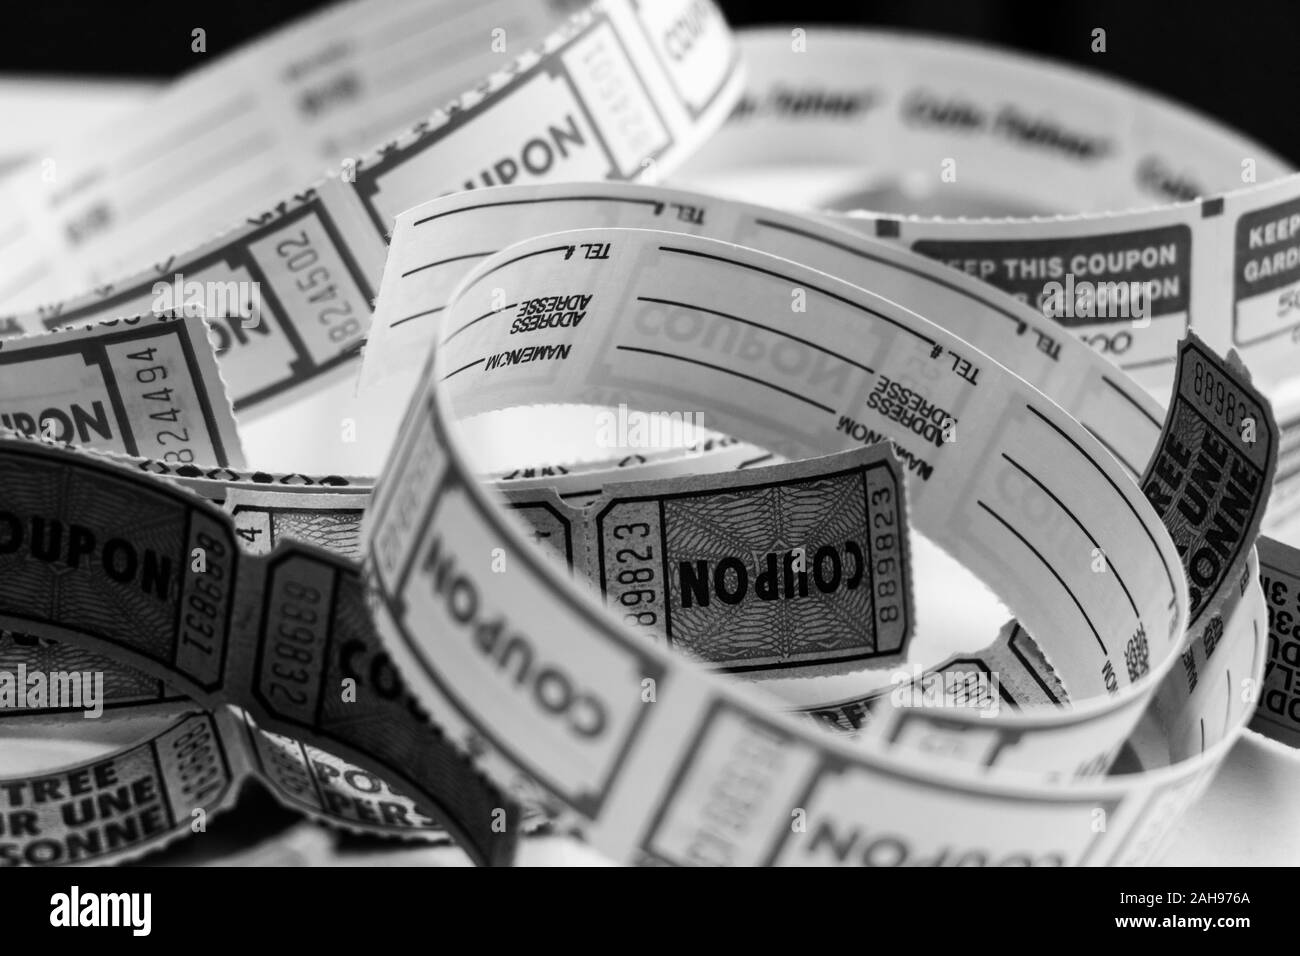 Photo en noir et blanc des billets de tombola non roulés Banque D'Images